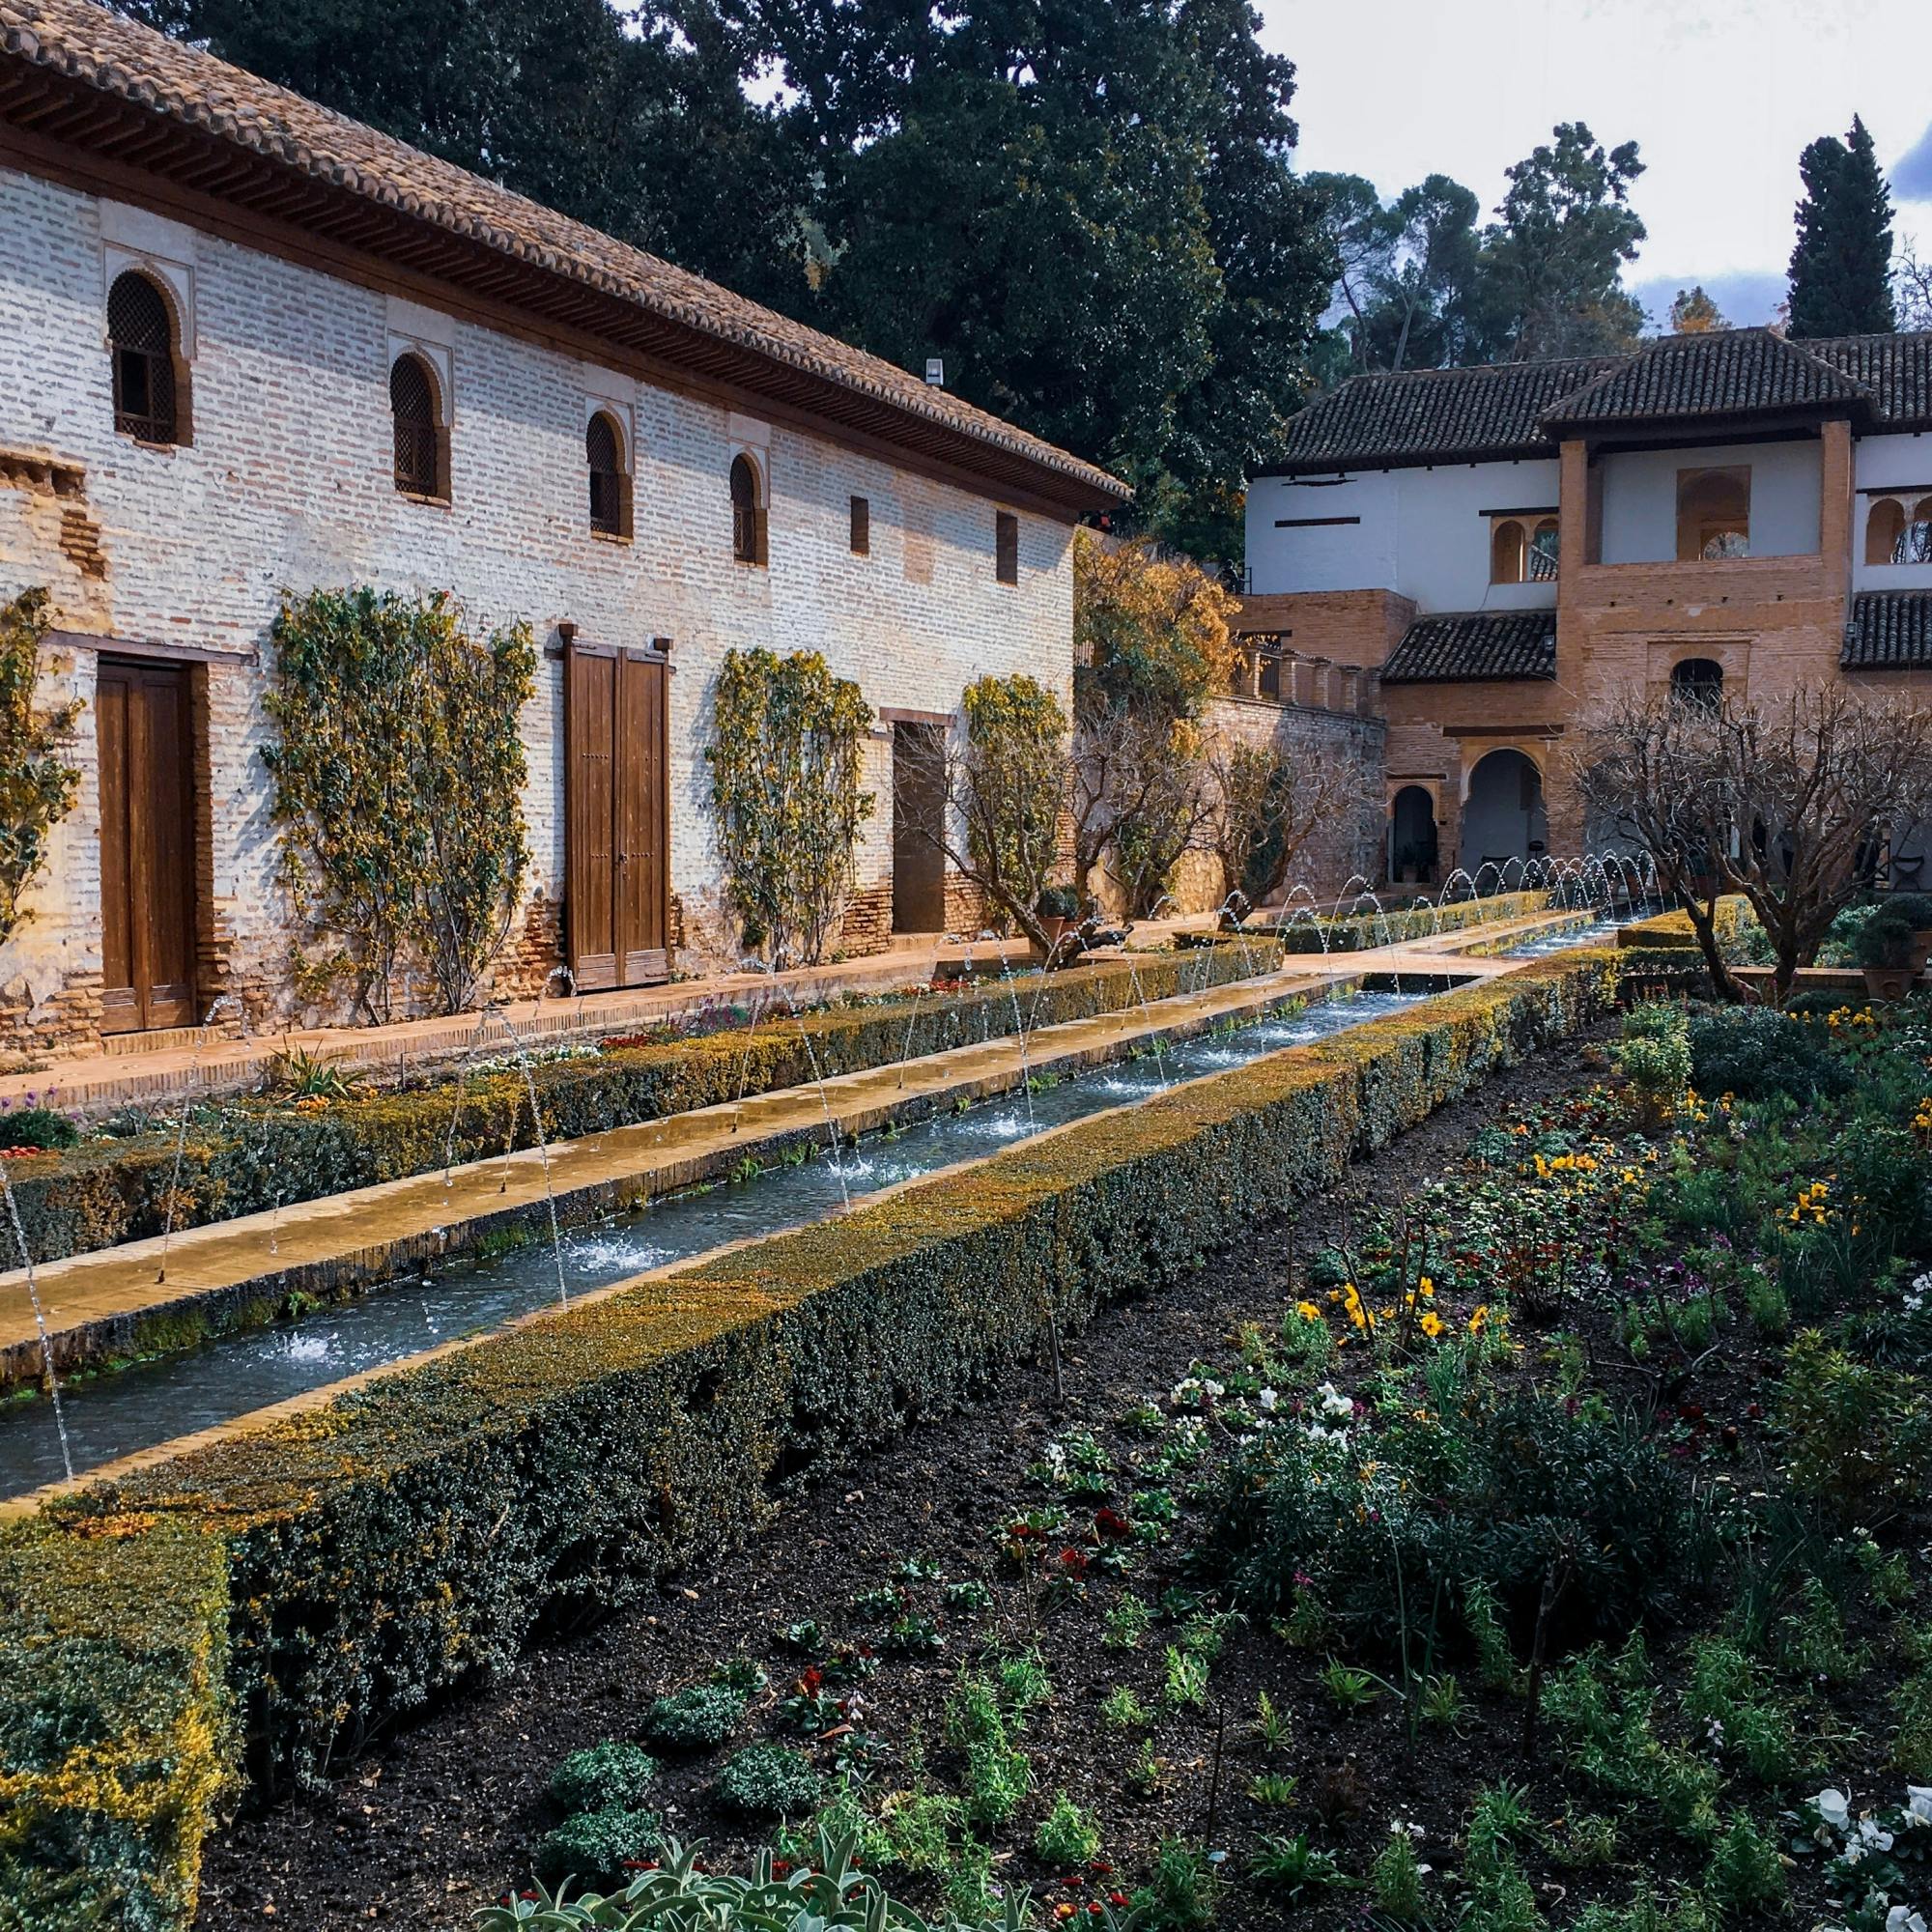 Visita completa pela Alhambra com audioguia e cartão turístico